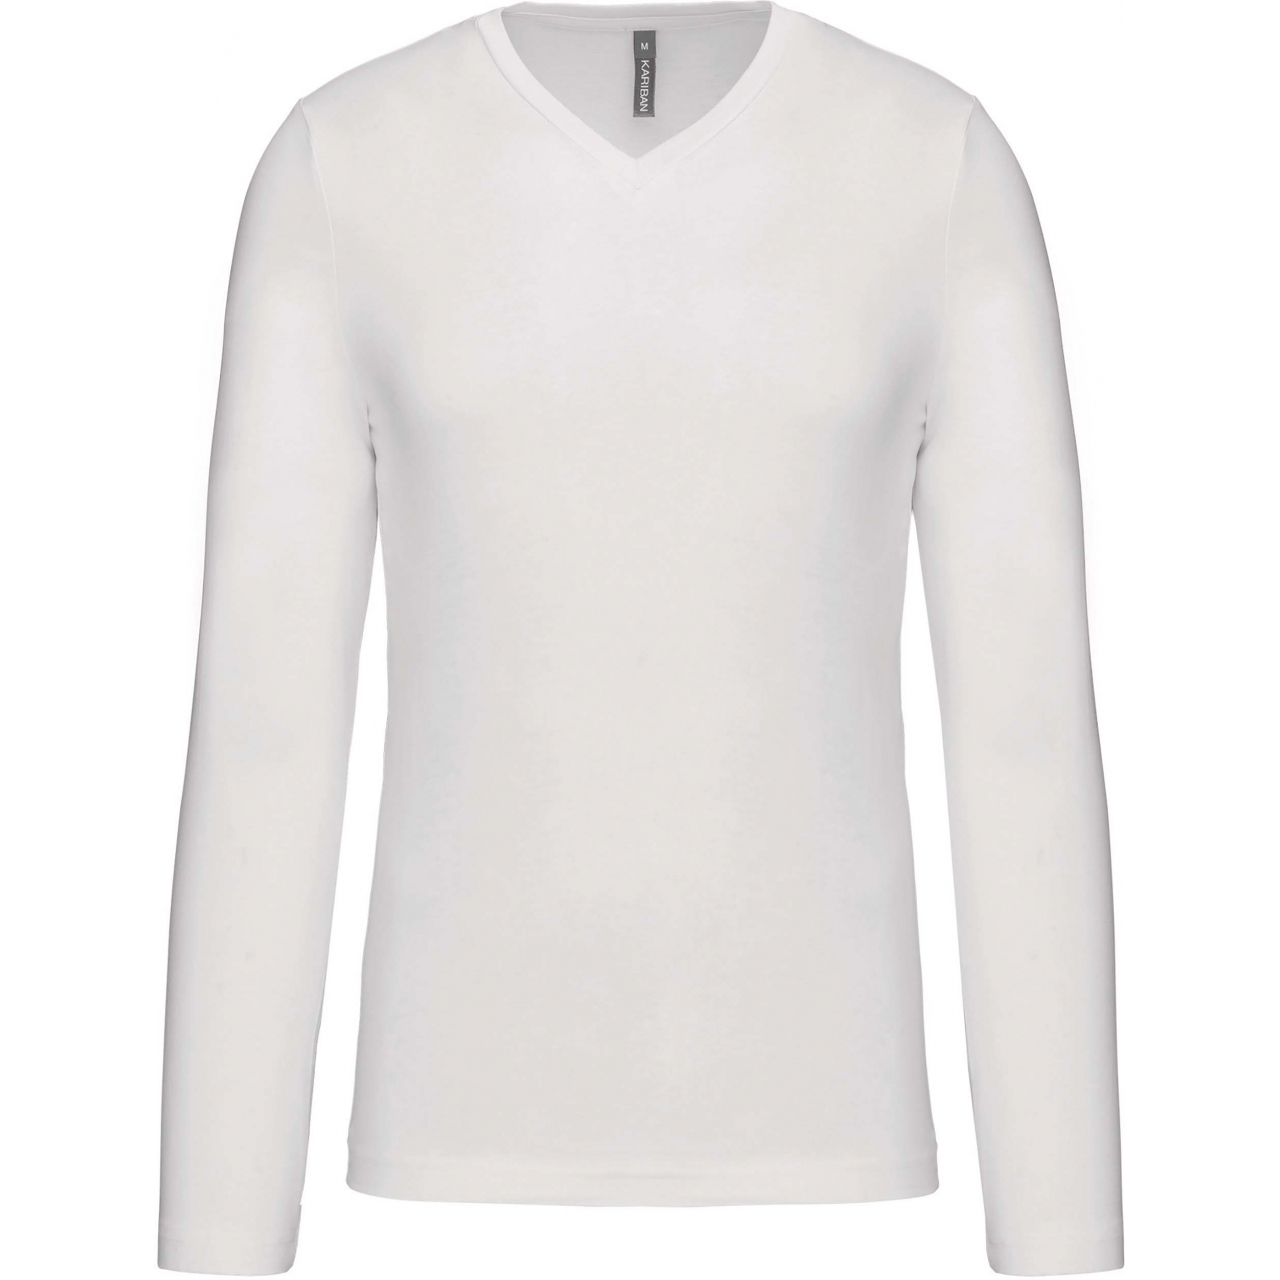 Pánské tričko Kariban dlouhý rukáv V-neck - bílé, XL